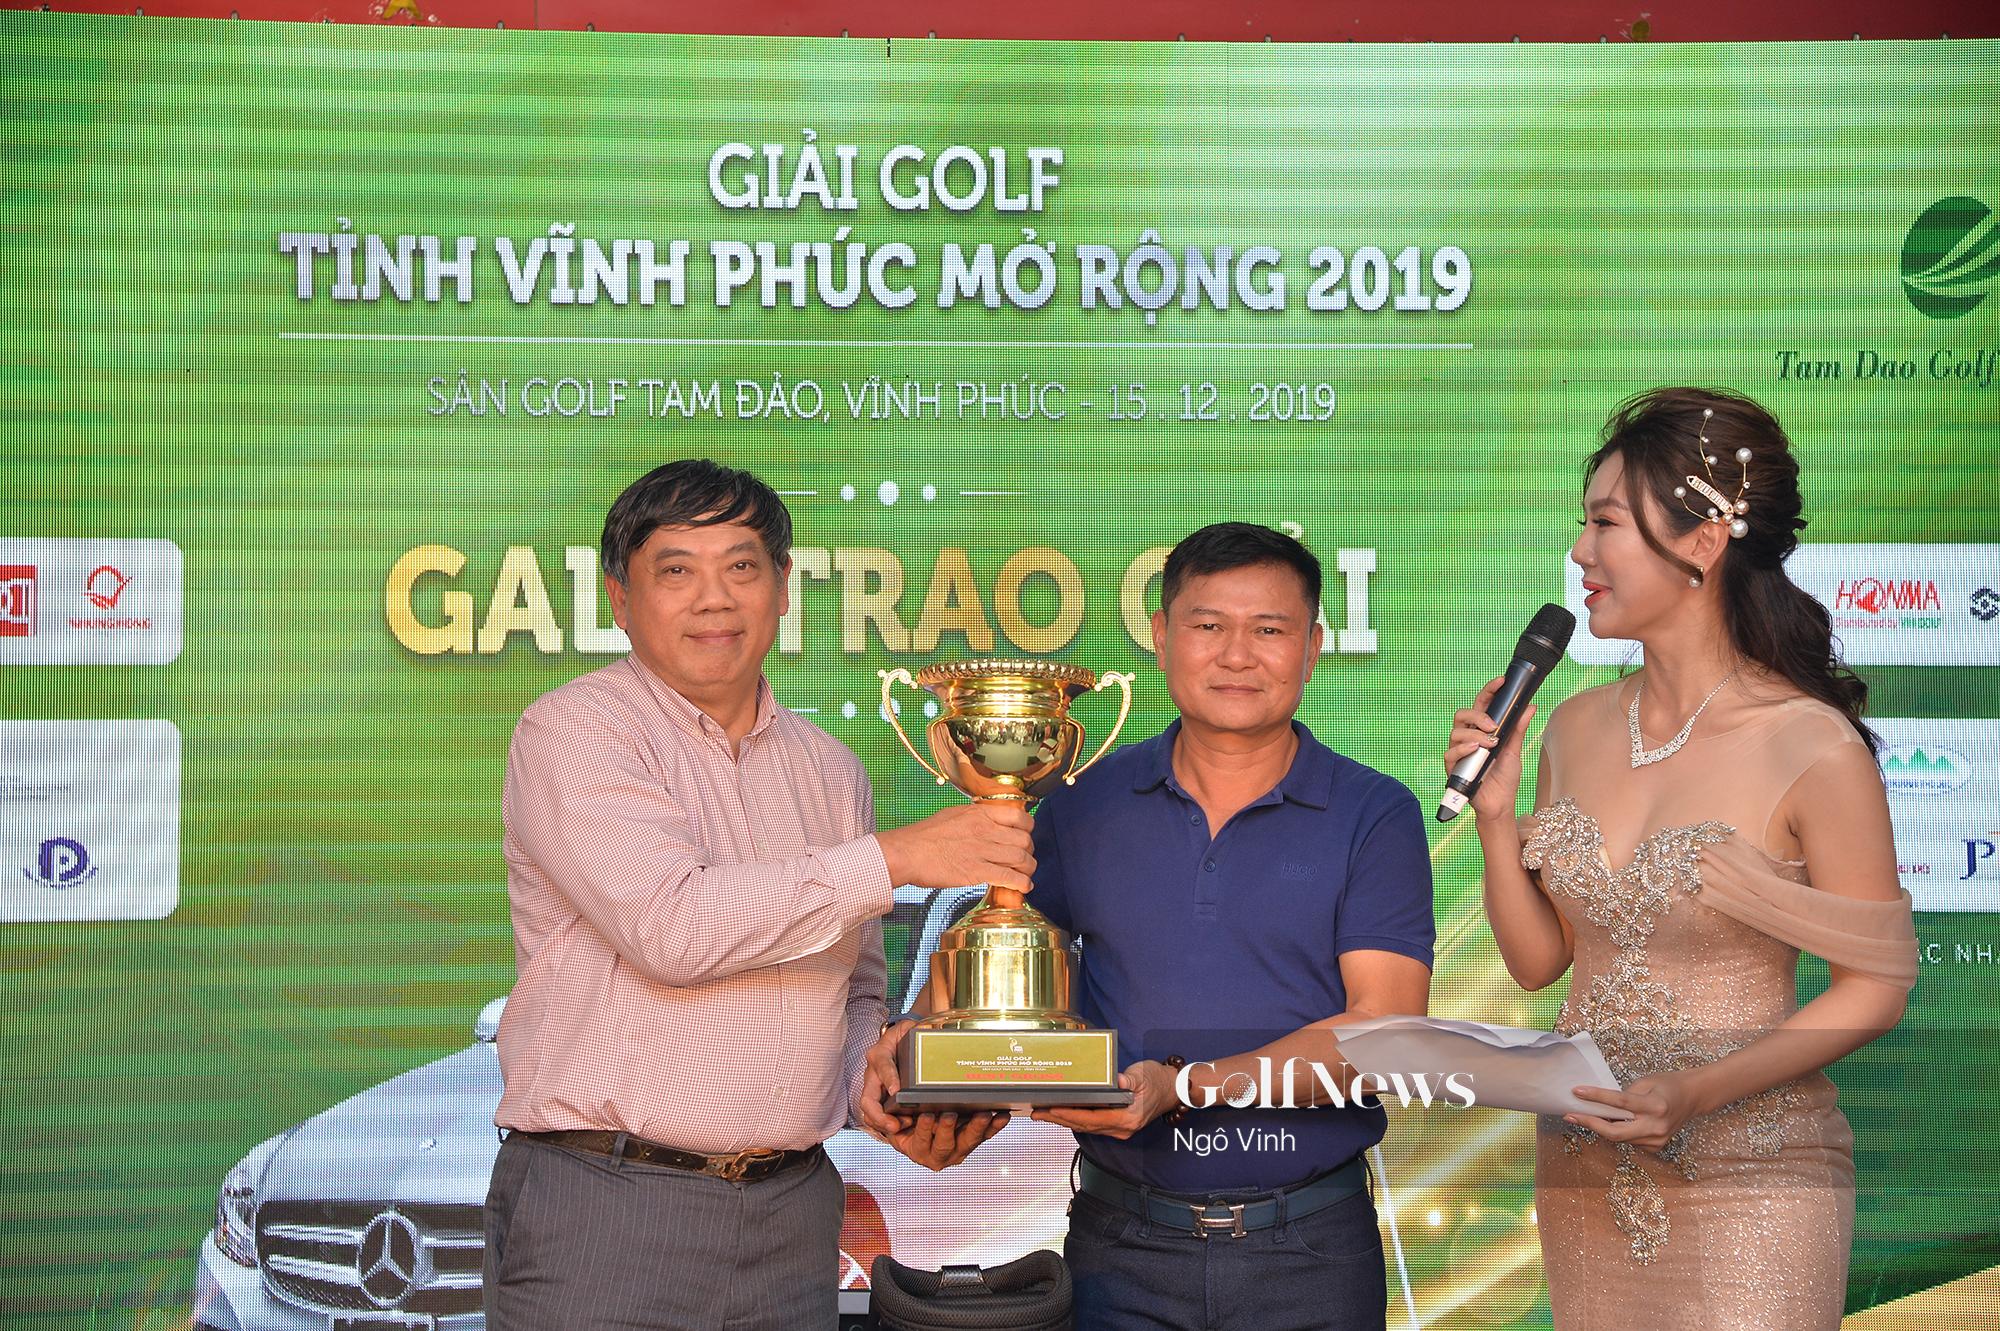 Golfer Đường Ngọc Dương vô địch Giải golf tỉnh Vĩnh Phúc Mở rộng 2019